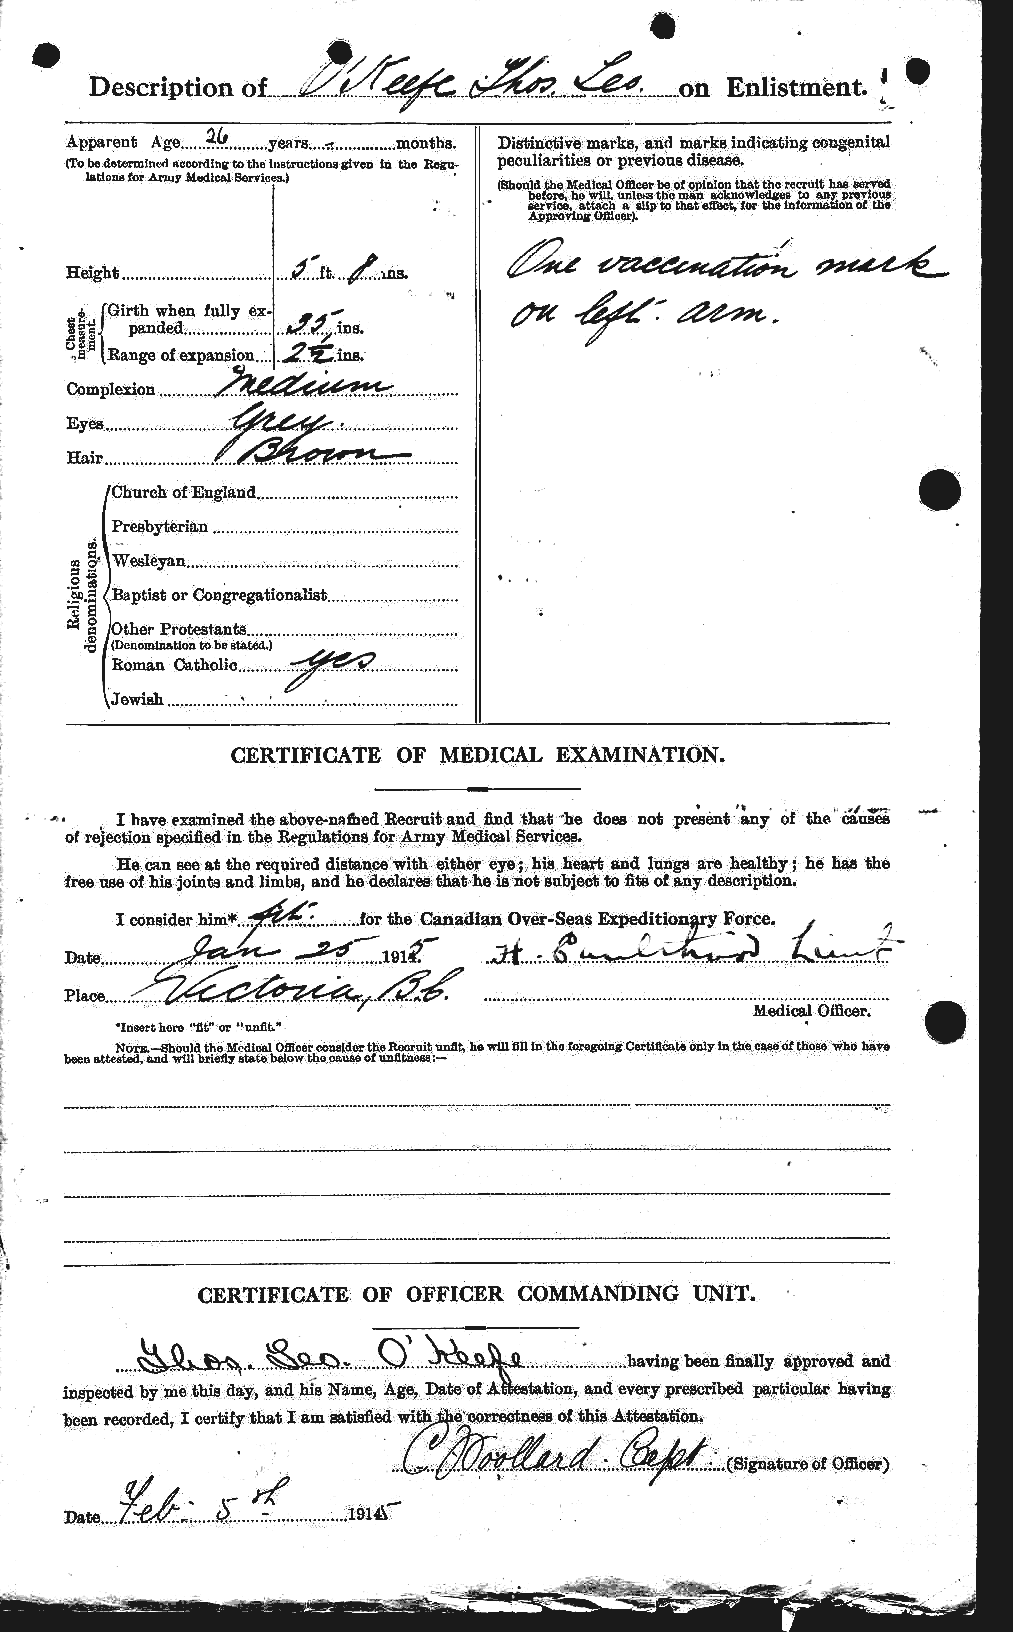 Dossiers du Personnel de la Première Guerre mondiale - CEC 556352b